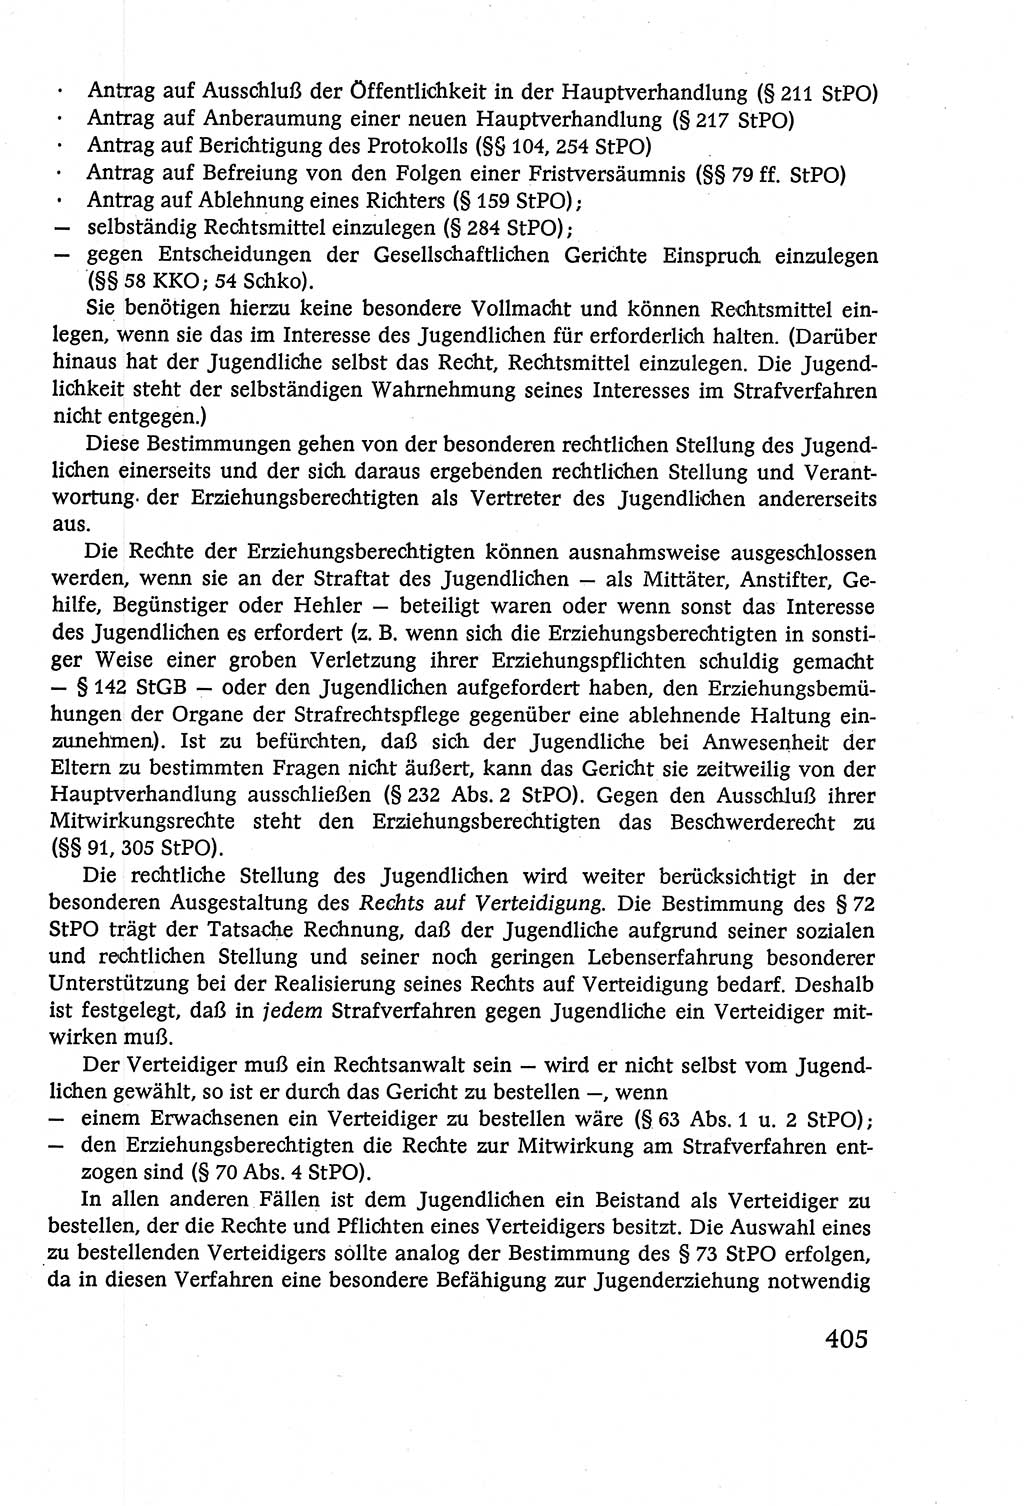 Strafverfahrensrecht [Deutsche Demokratische Republik (DDR)], Lehrbuch 1977, Seite 405 (Strafverf.-R. DDR Lb. 1977, S. 405)